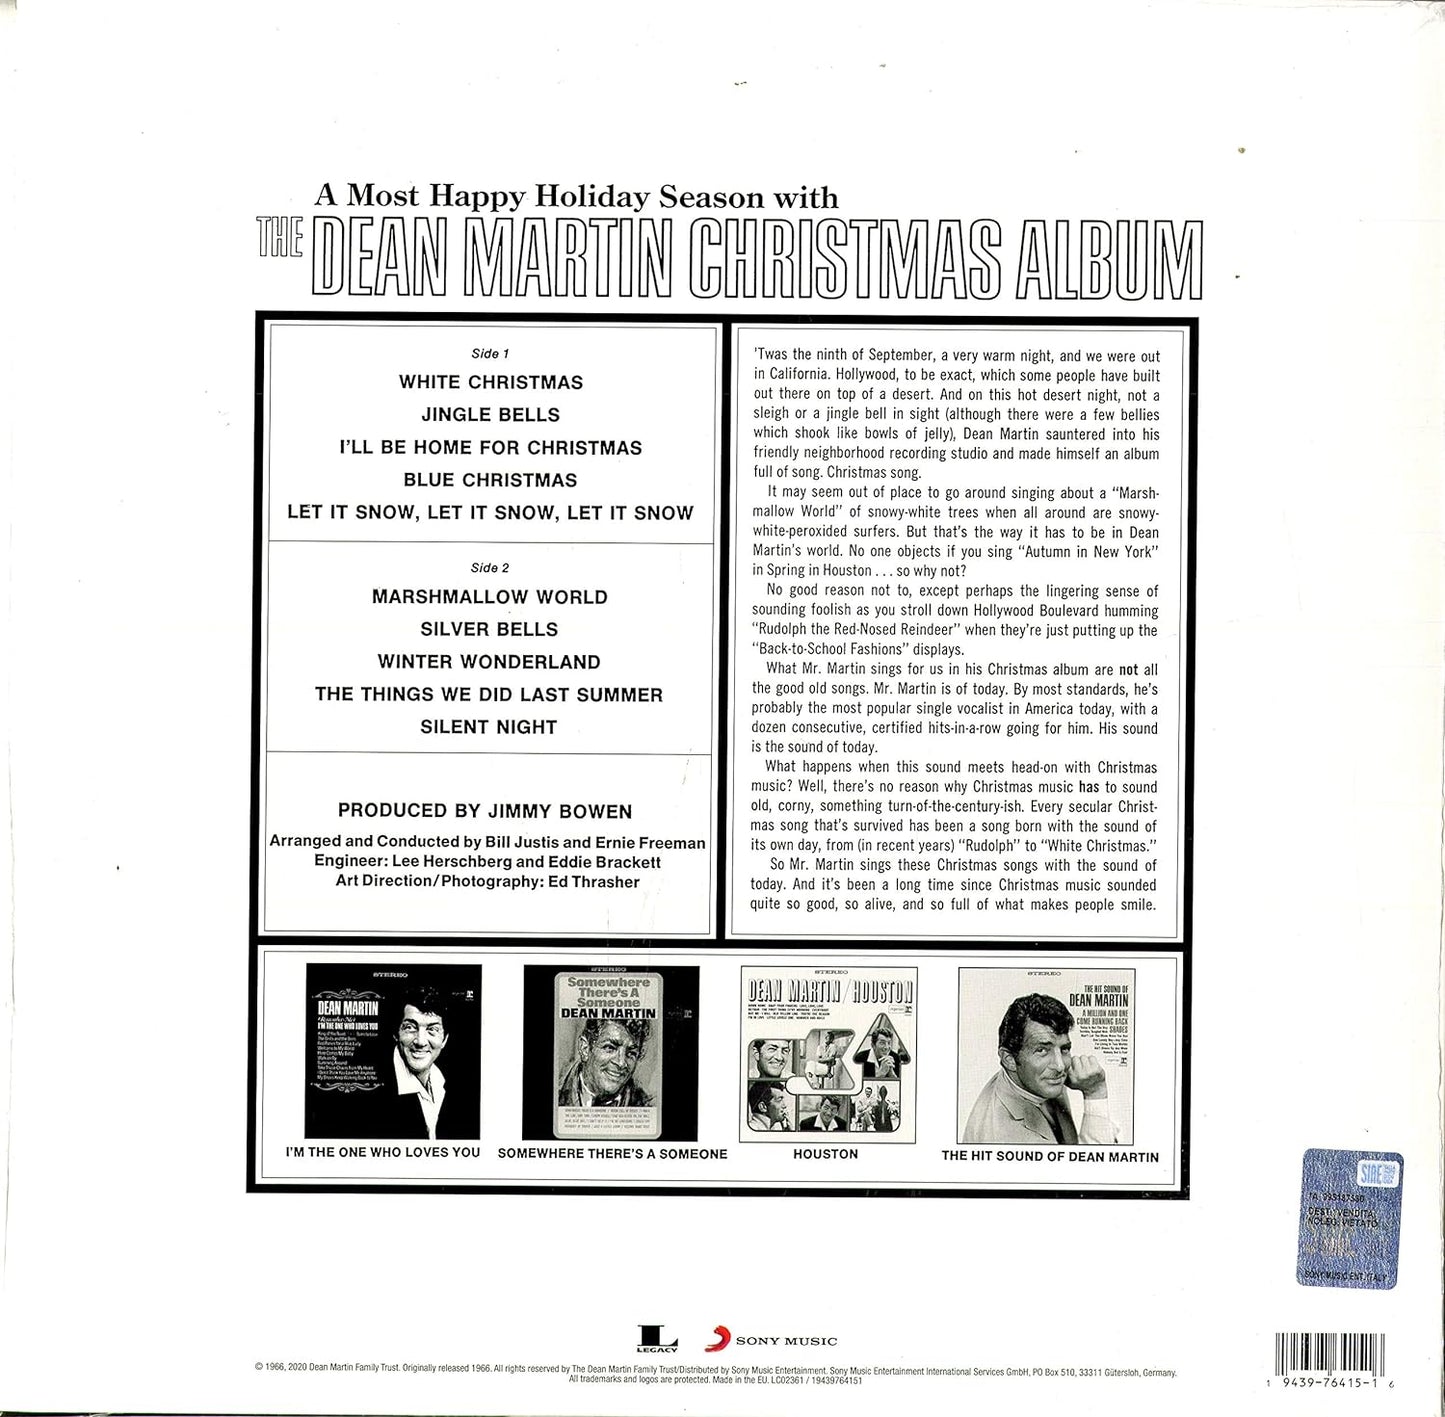 Martin, Dean/The Dean Martin Christmas Album [LP]